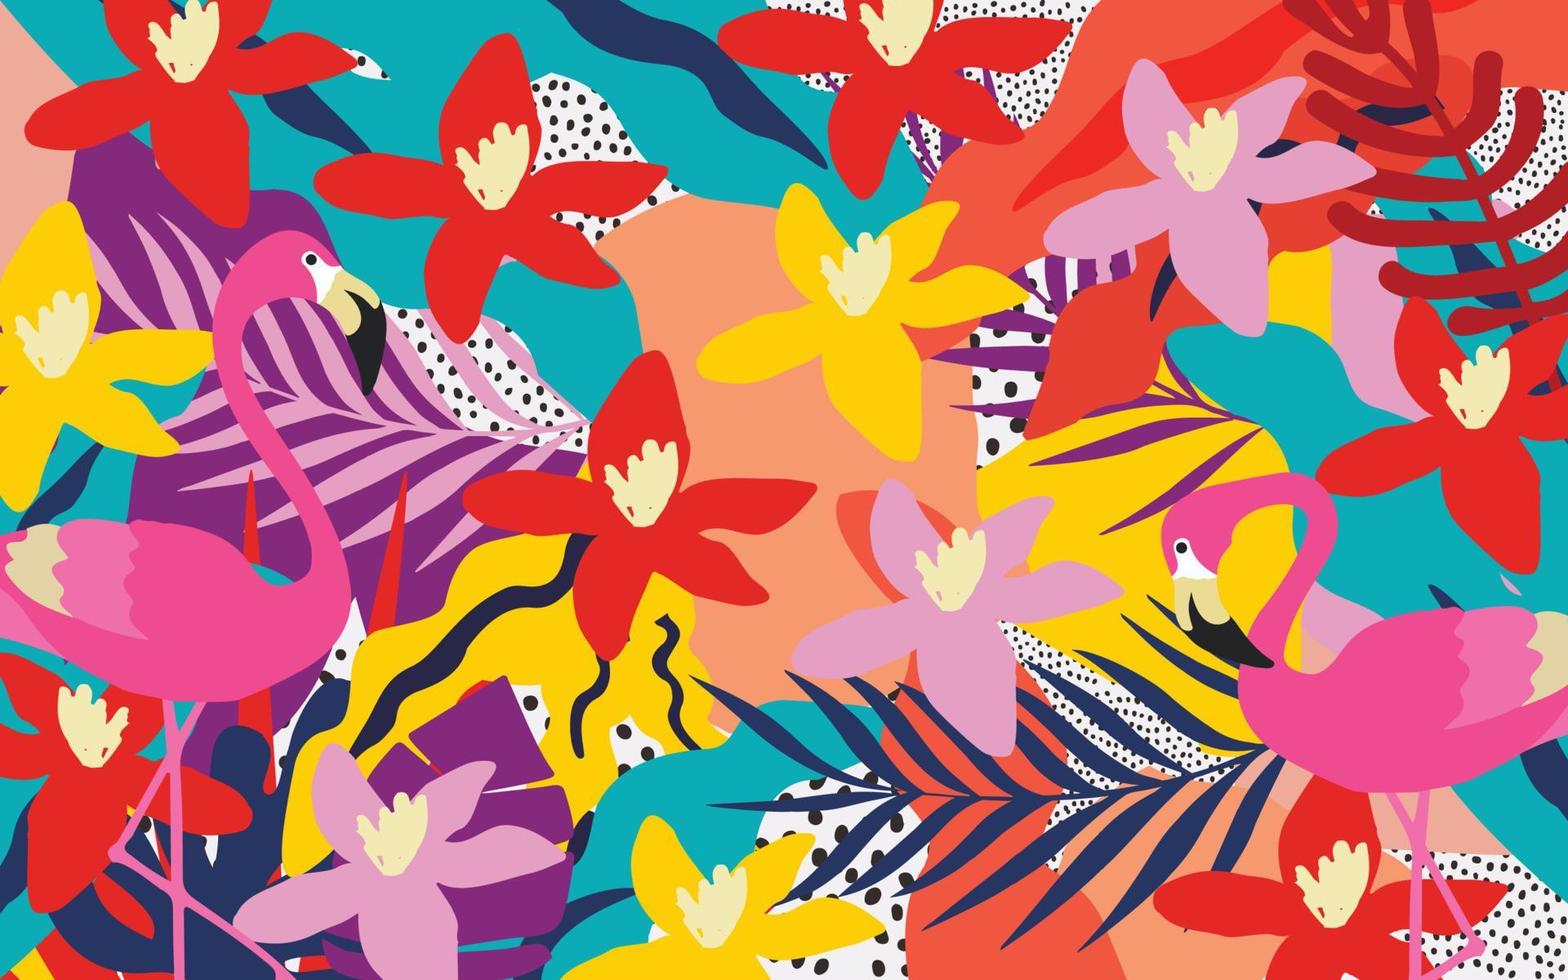 niedliche gartenblumen und blätter mit buntem muster der flamingos. Flamingovögel mit botanischen Elementen, Vektorgrafik-Design für Mode, Stoffe, Tapeten, Karten, Drucke vektor